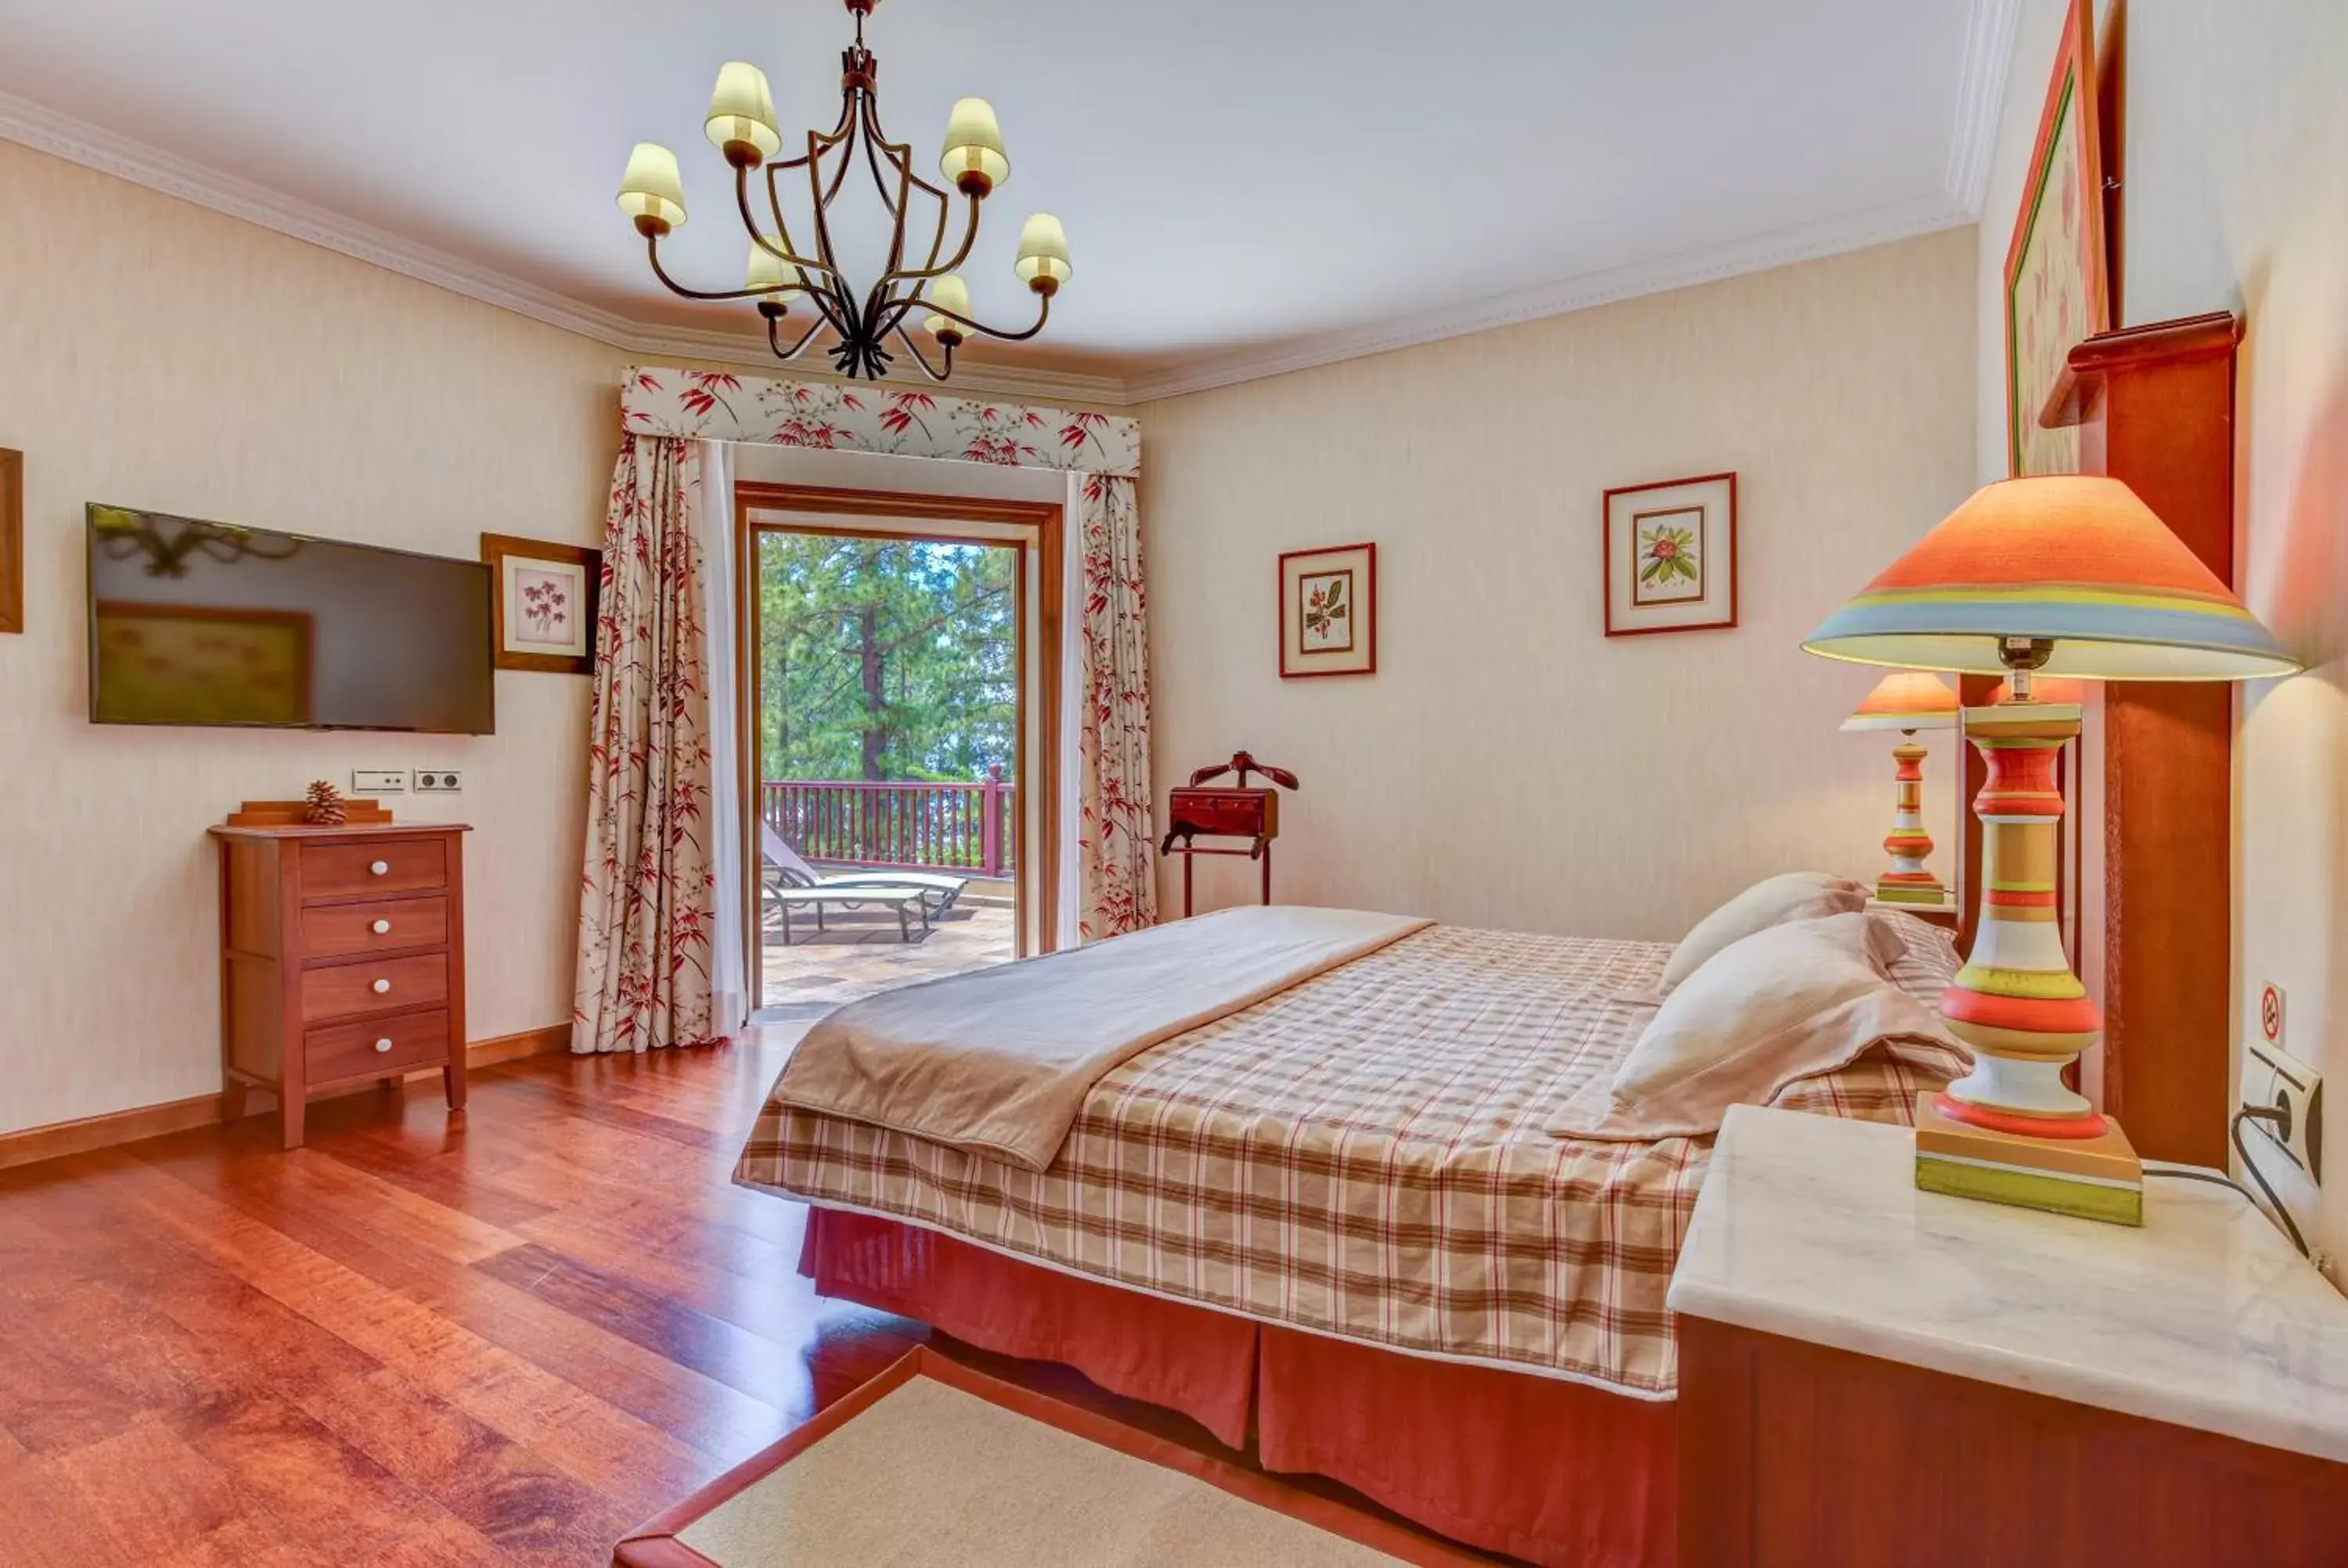 Bedroom in Hotel Spa Villalba